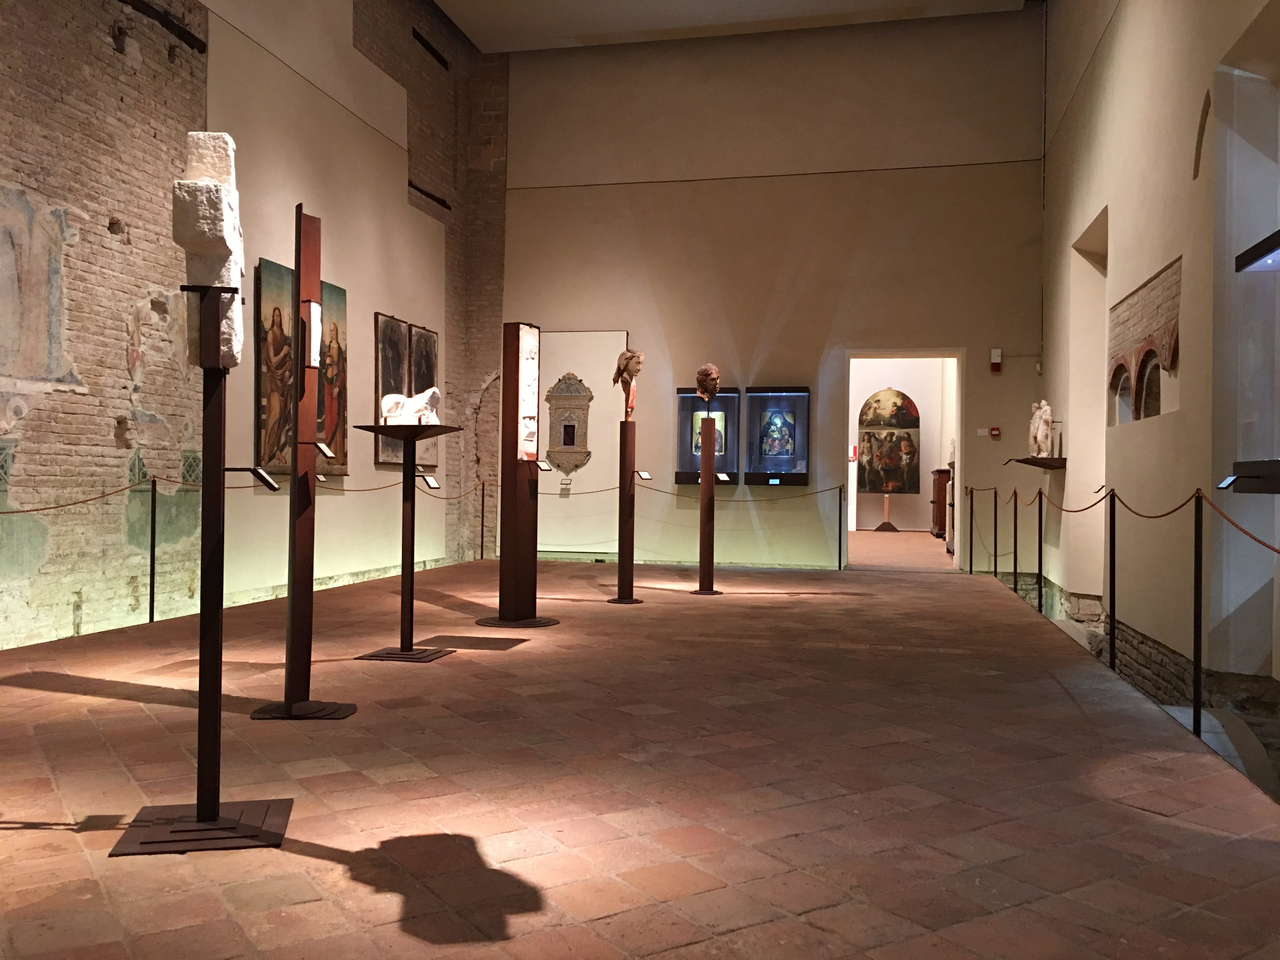 Gli eventi del Museo Diocesano di Faenza